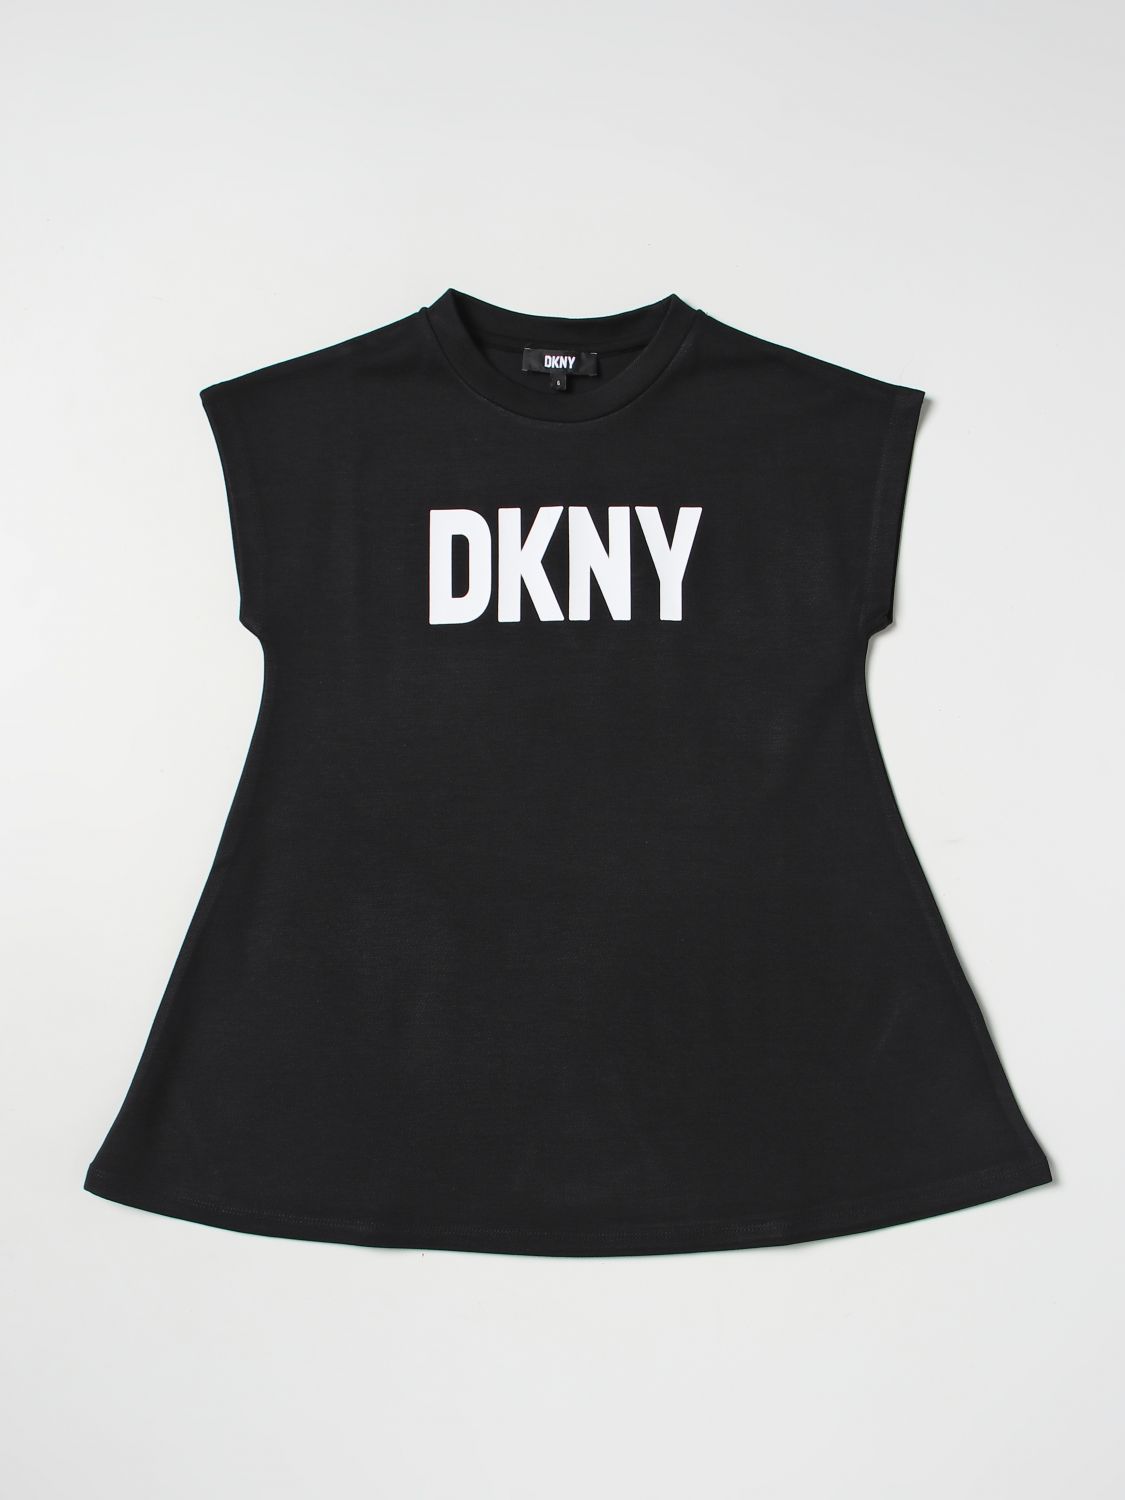 Kleid Dkny: Dkny Mädchen Kleid schwarz 1